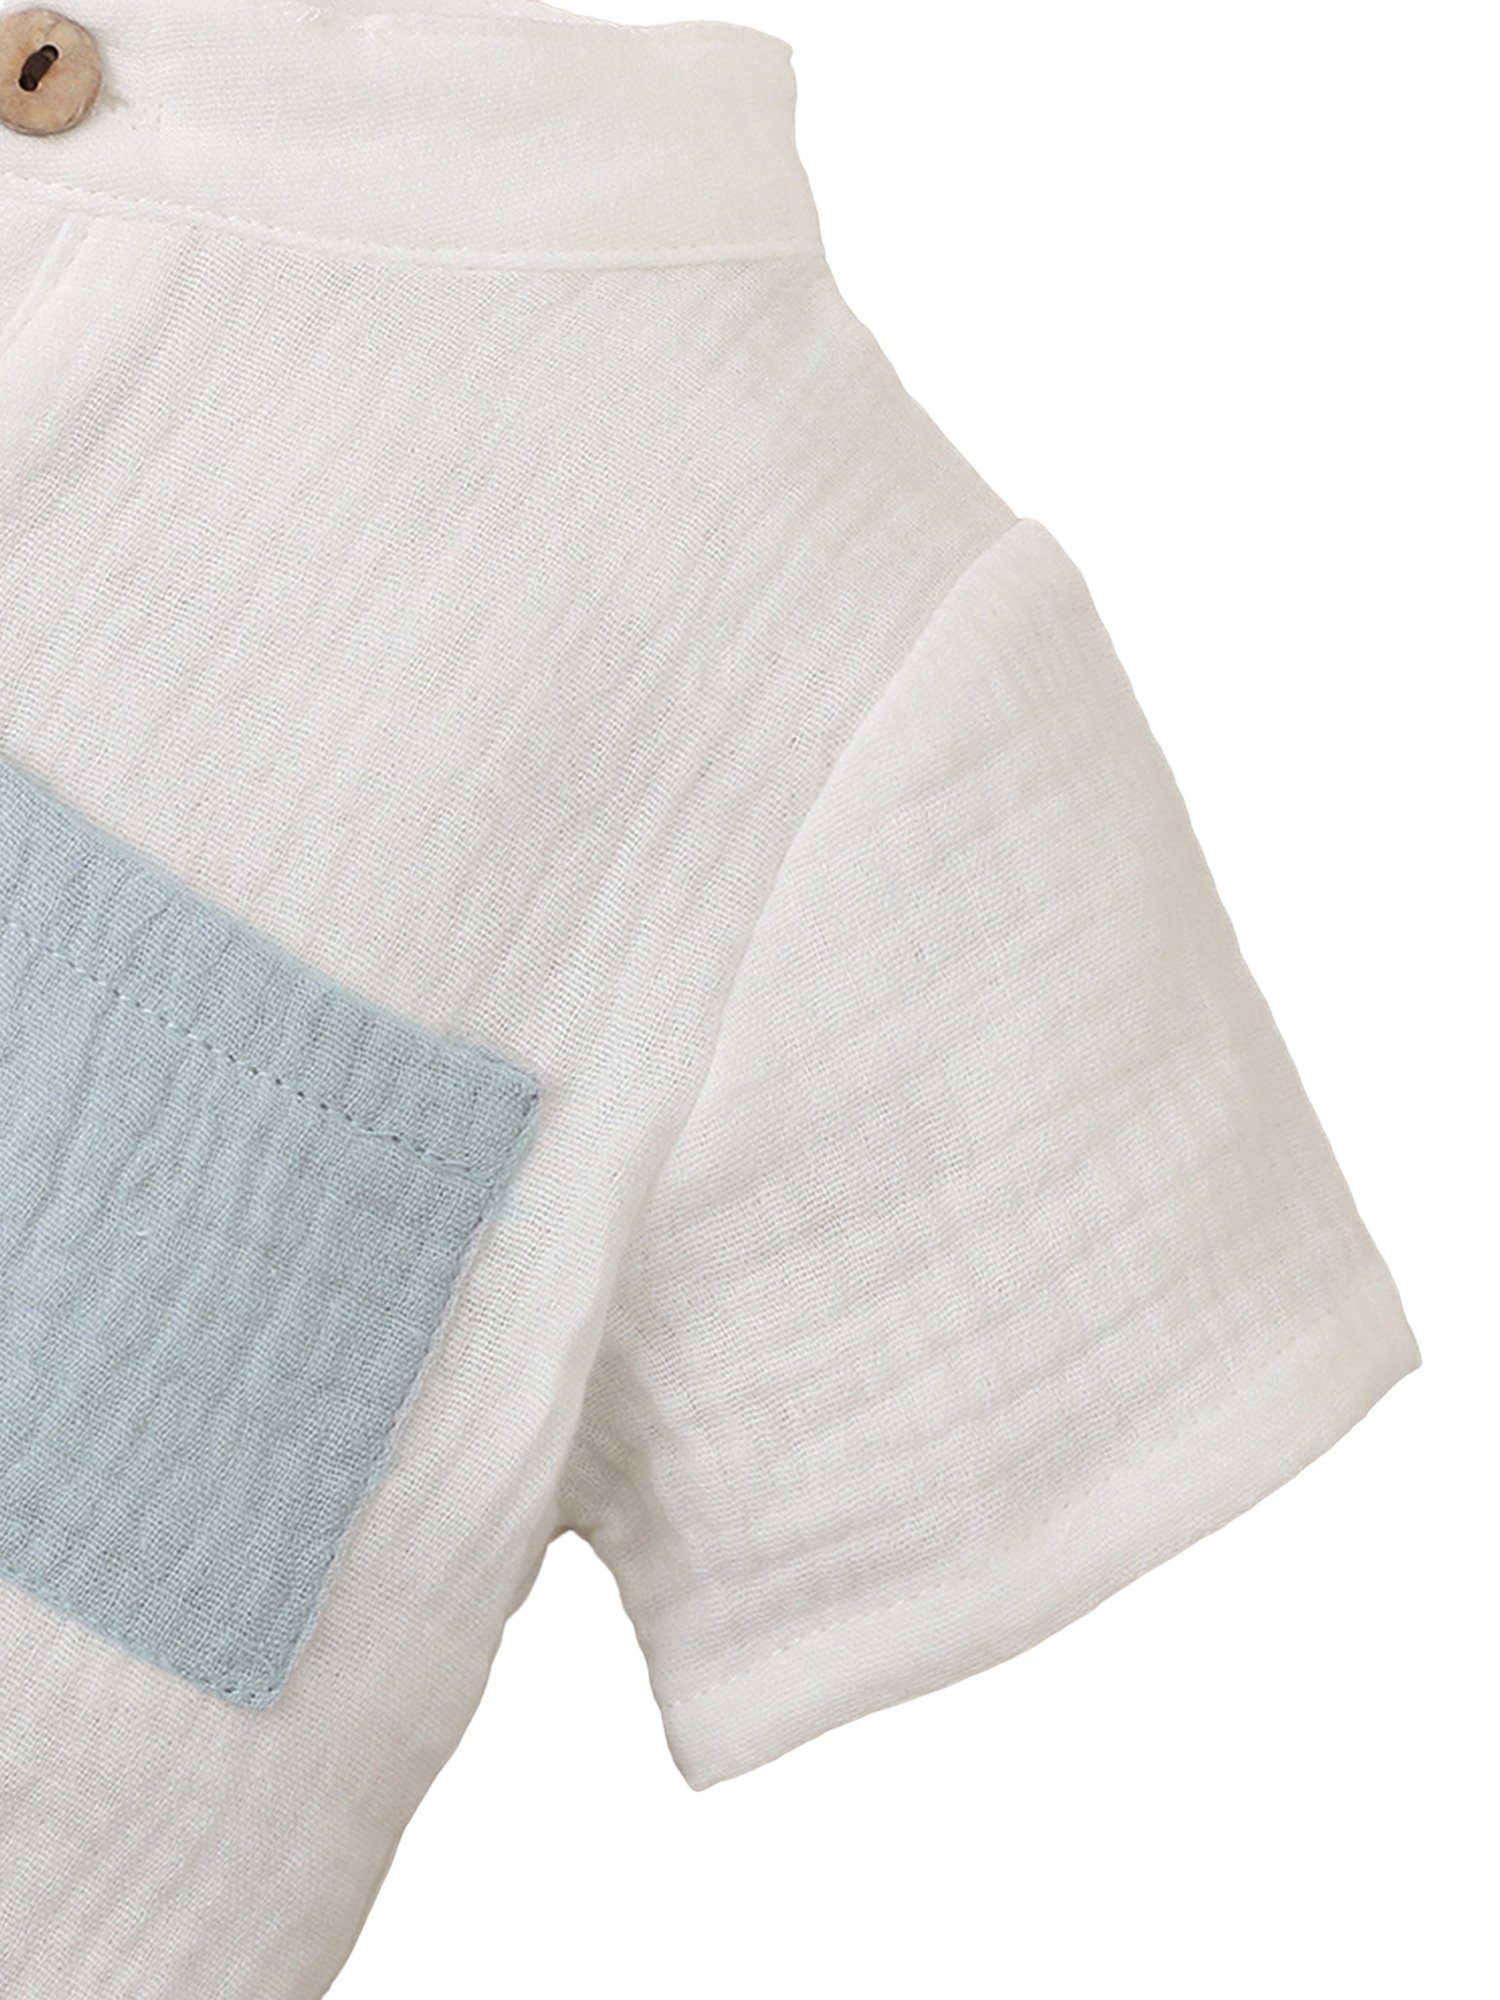 LAPA Shirt & Shorts 2-teiliger Baumwoll-Softanzug Freizeitanzug Jungen Baby in Kontrastfarben für